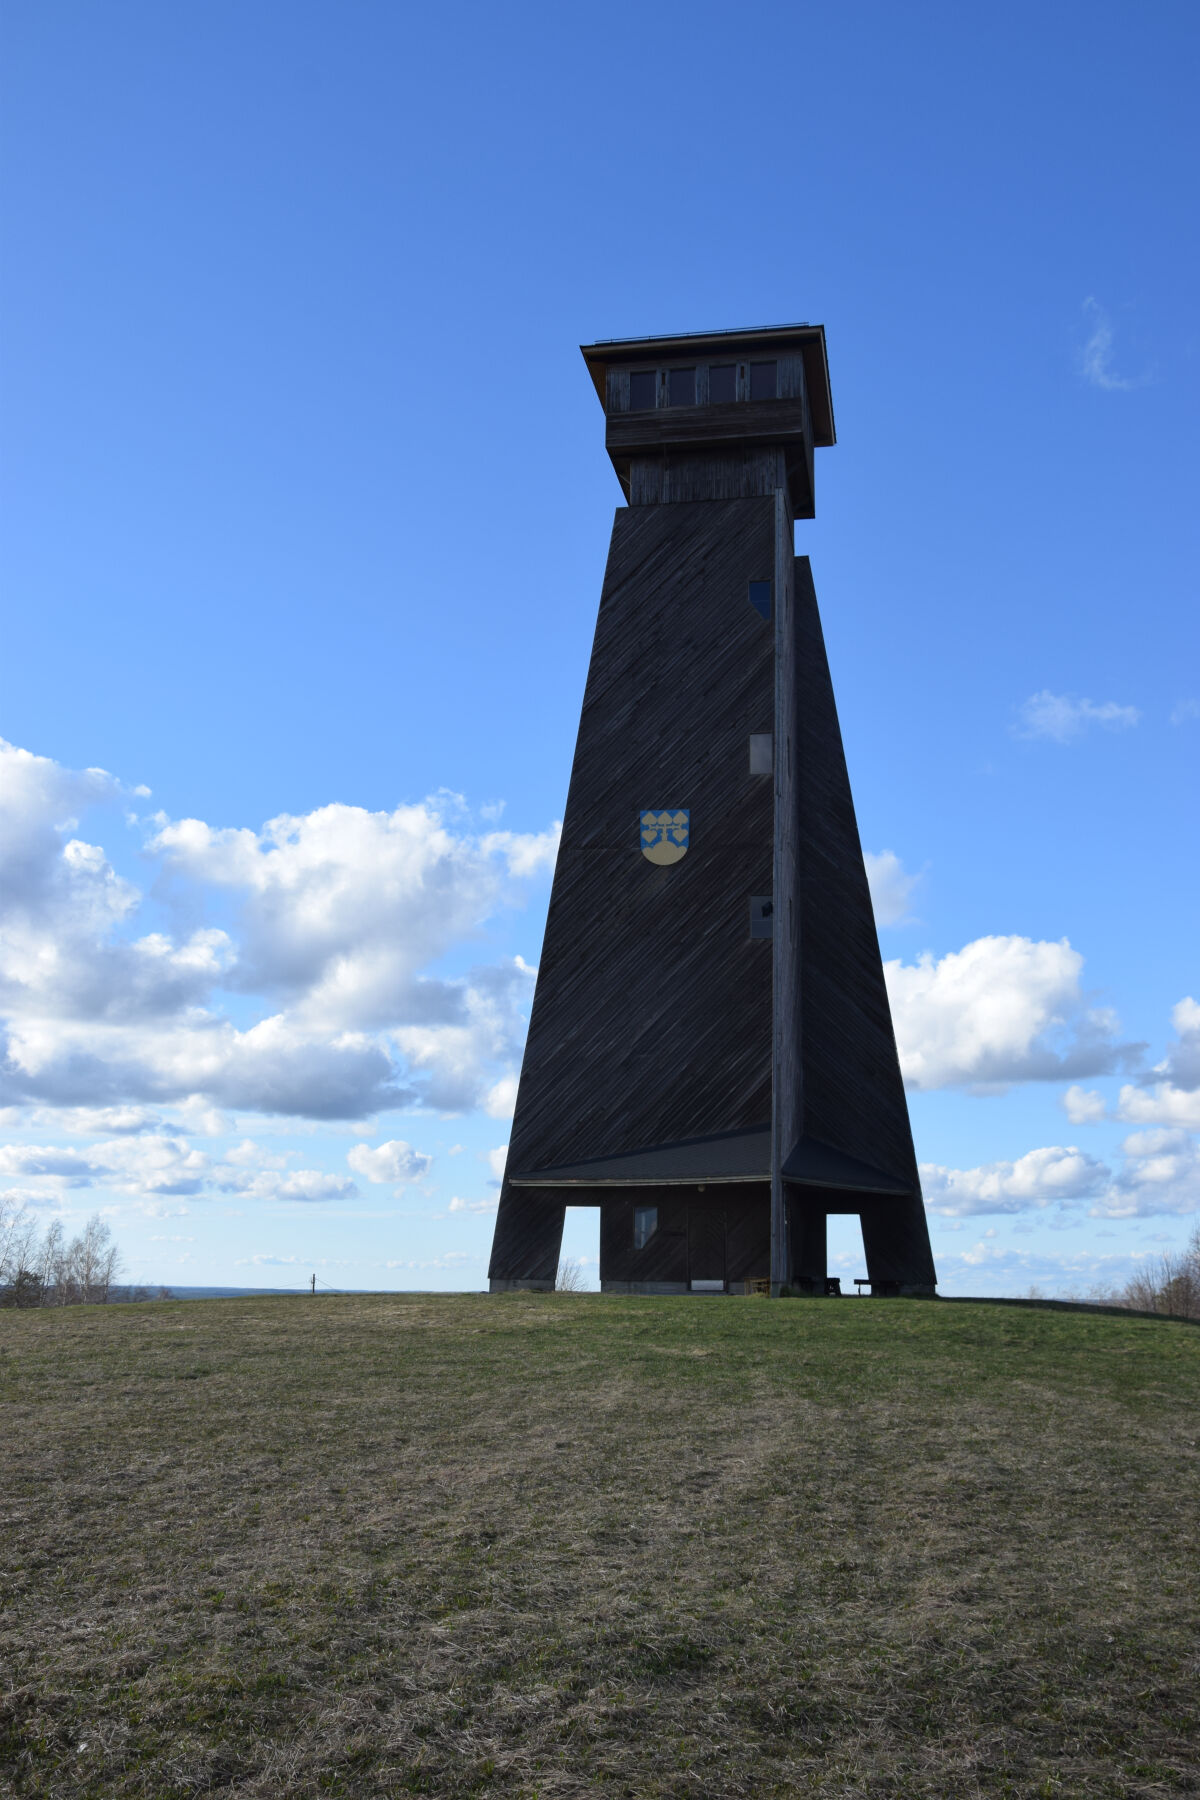 Suokonmäen kotiseututalon vieressä sijaitseva torni on Pohjois-Lehtimäen kylät ry:n hallinnoima. Antti Maasalon taideteos puuttuu sen huipulta katon vaihtamisen jälkeen.